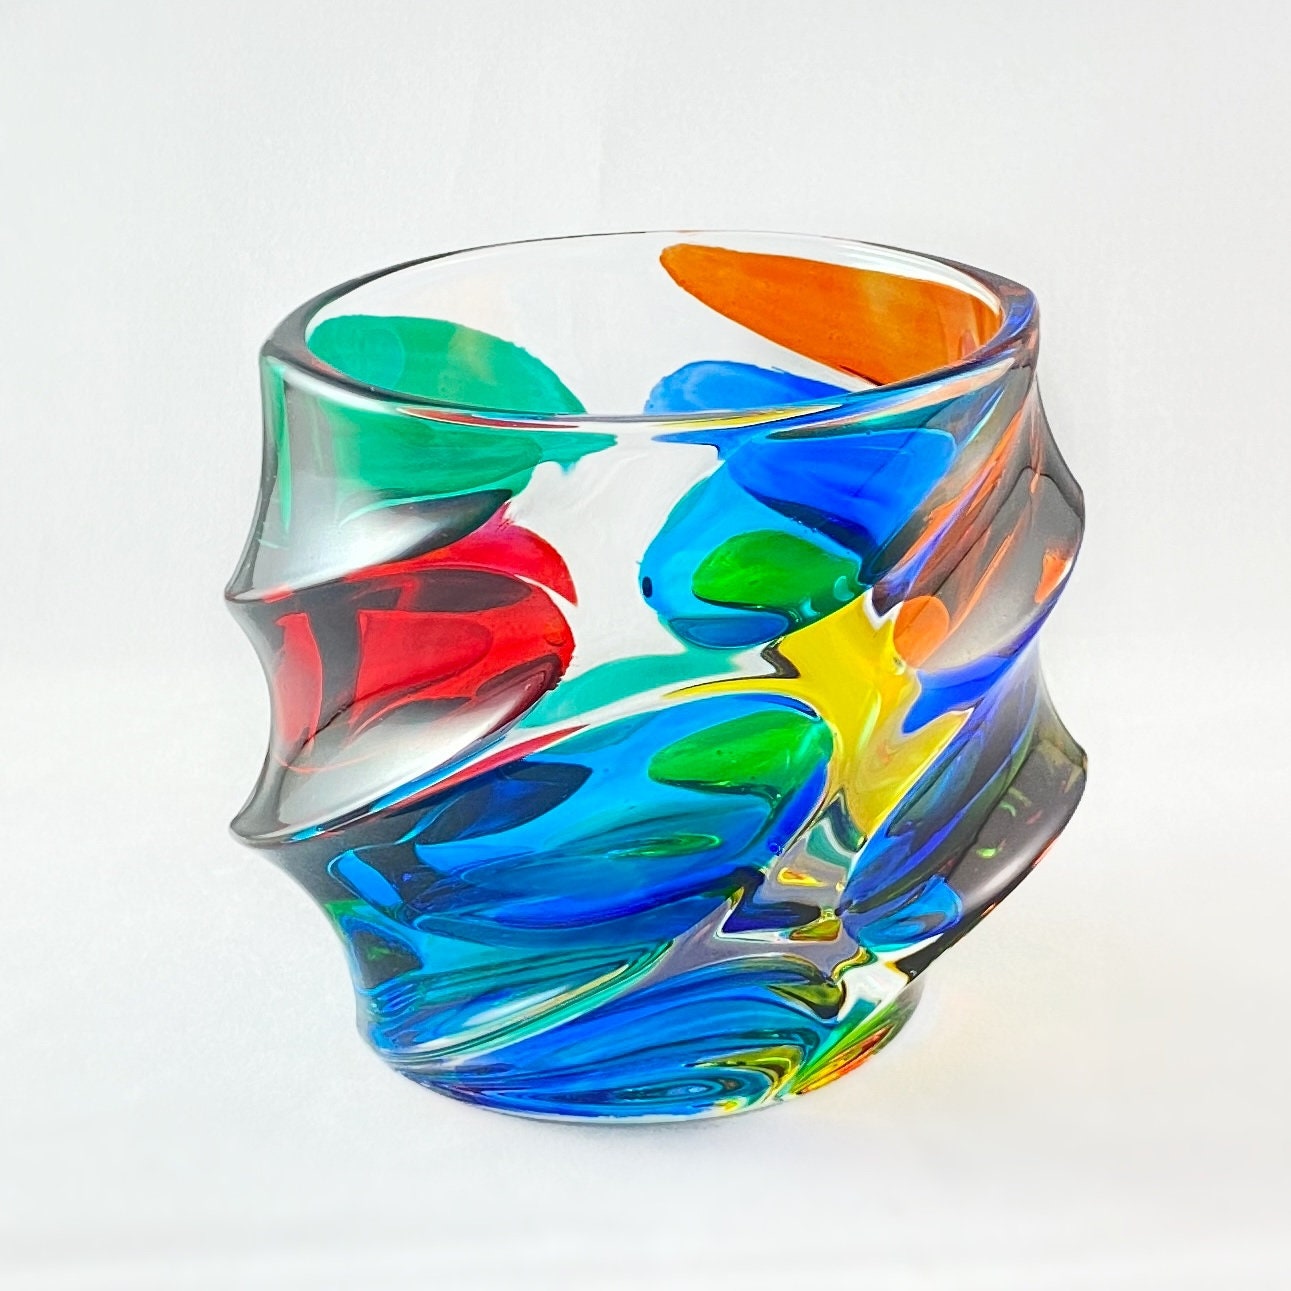 Venetian Glass Calypso Whiskey Glass - Handmade in Italy, Colorful Murano Glass